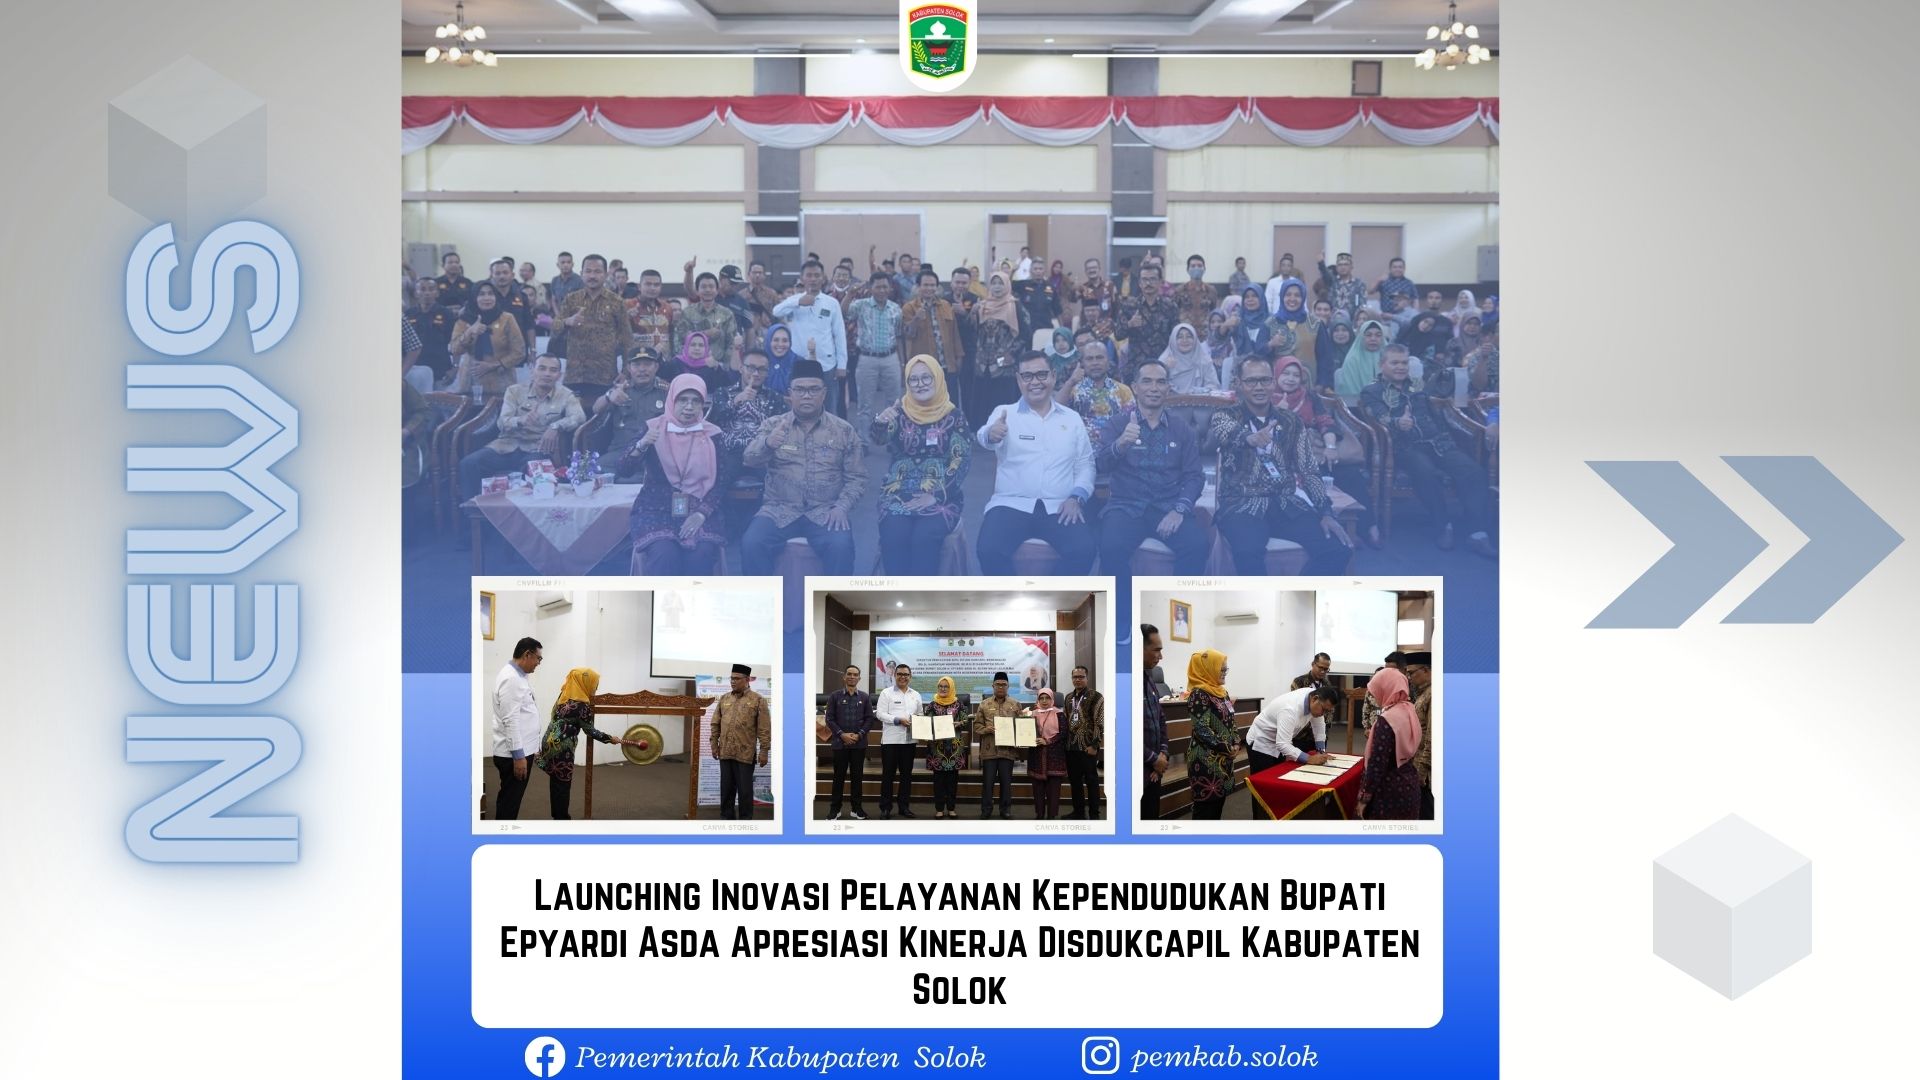 Launching Inovasi Pelayanan Kependudukan Bupati Epyardi Asda Apresiasi Kinerja Disdukcapil Kabupaten Solok